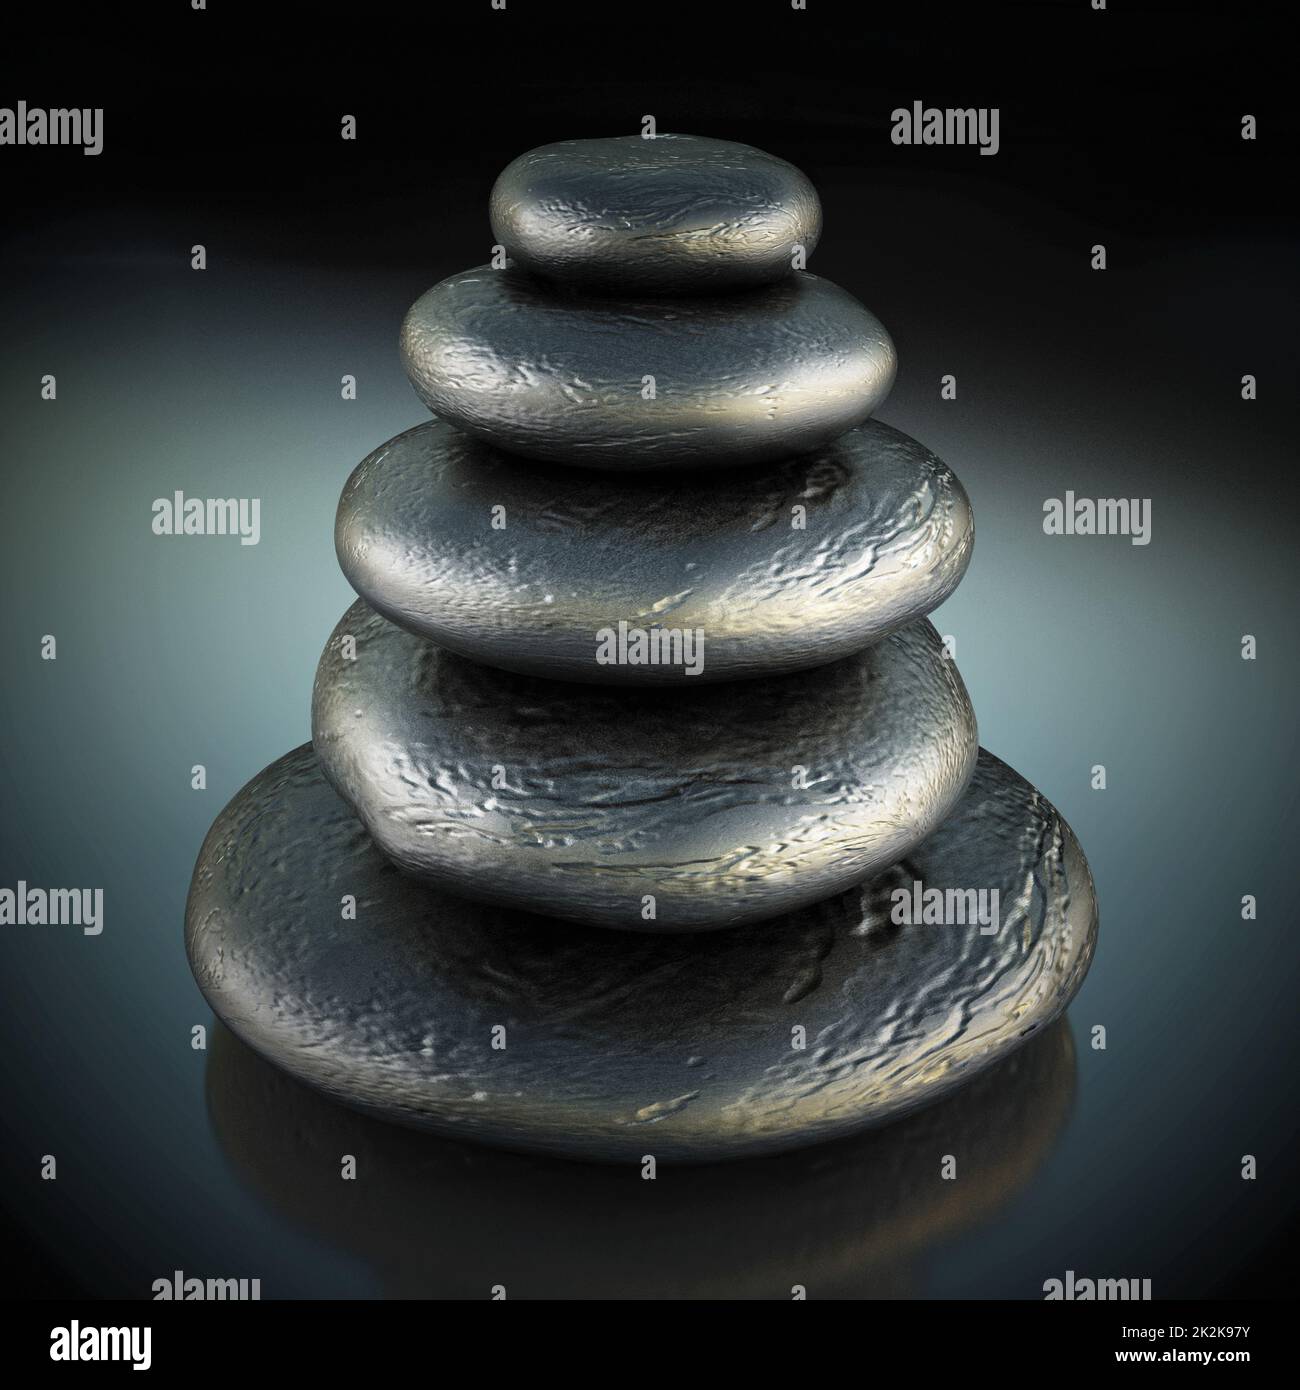 https://c8.alamy.com/comp/2K2K97Y/heap-of-black-massage-stones-on-black-background-3d-illustration-2K2K97Y.jpg